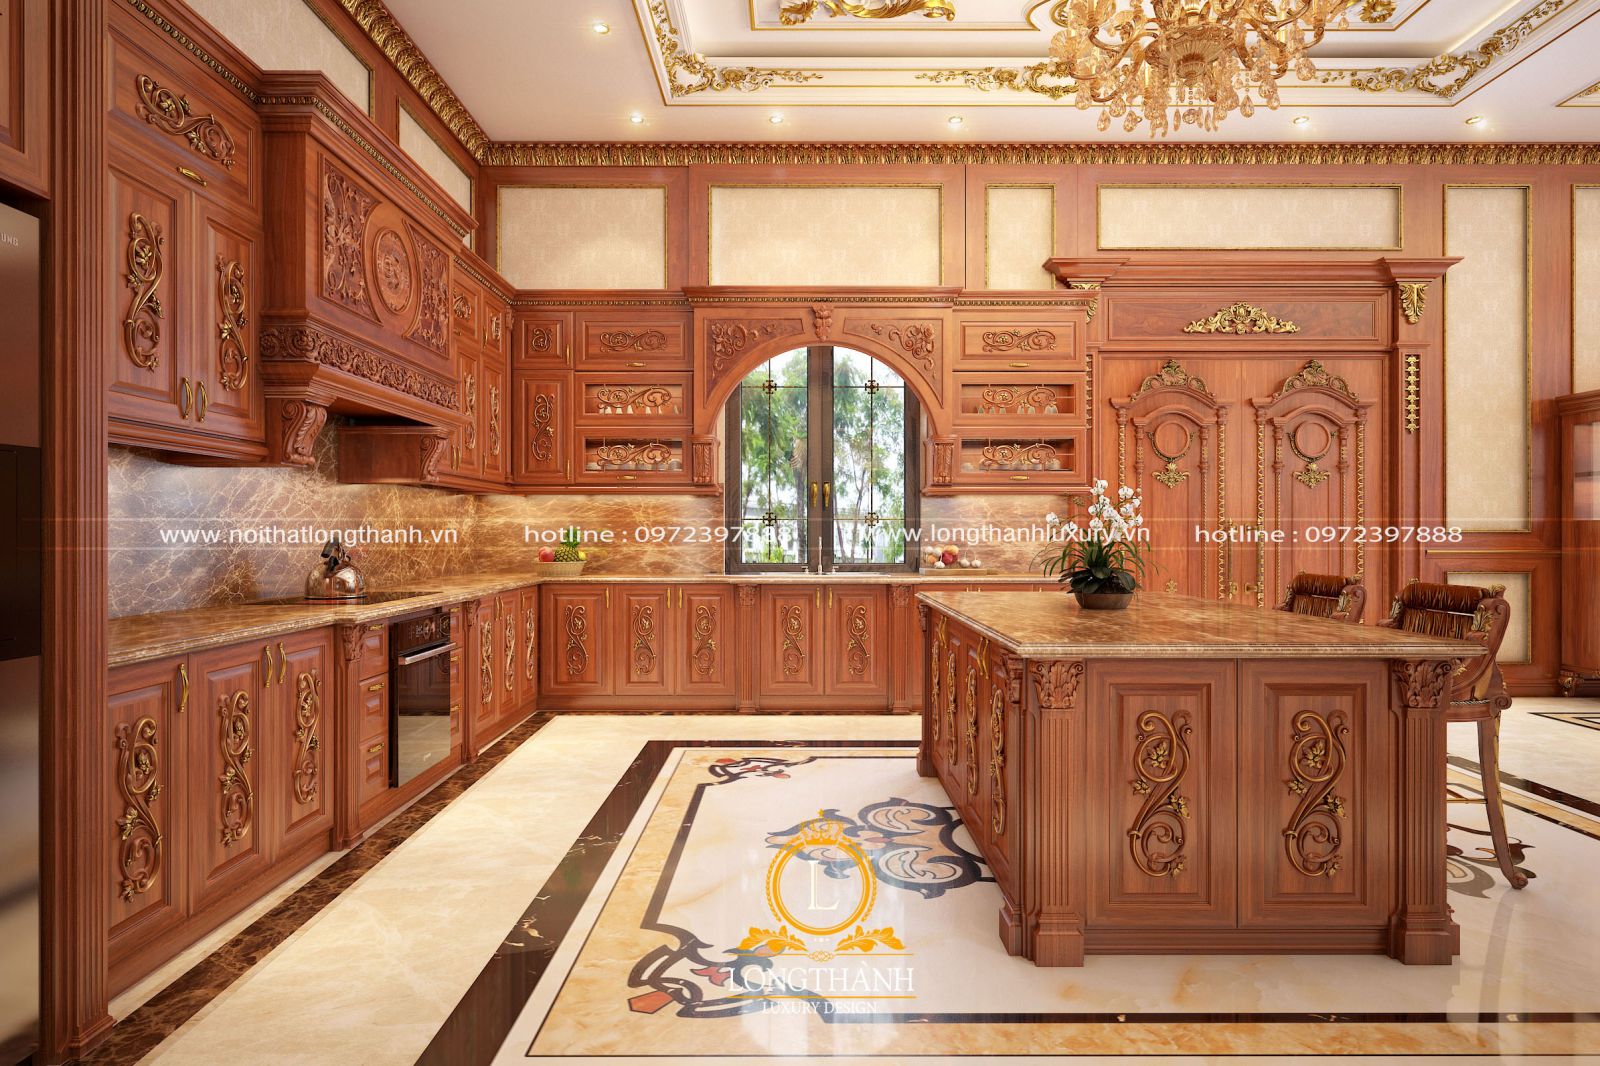 Không gian phòng bếp tân cổ điển cho biệt thự với nội thất gỗ dát vàng ấn tượng